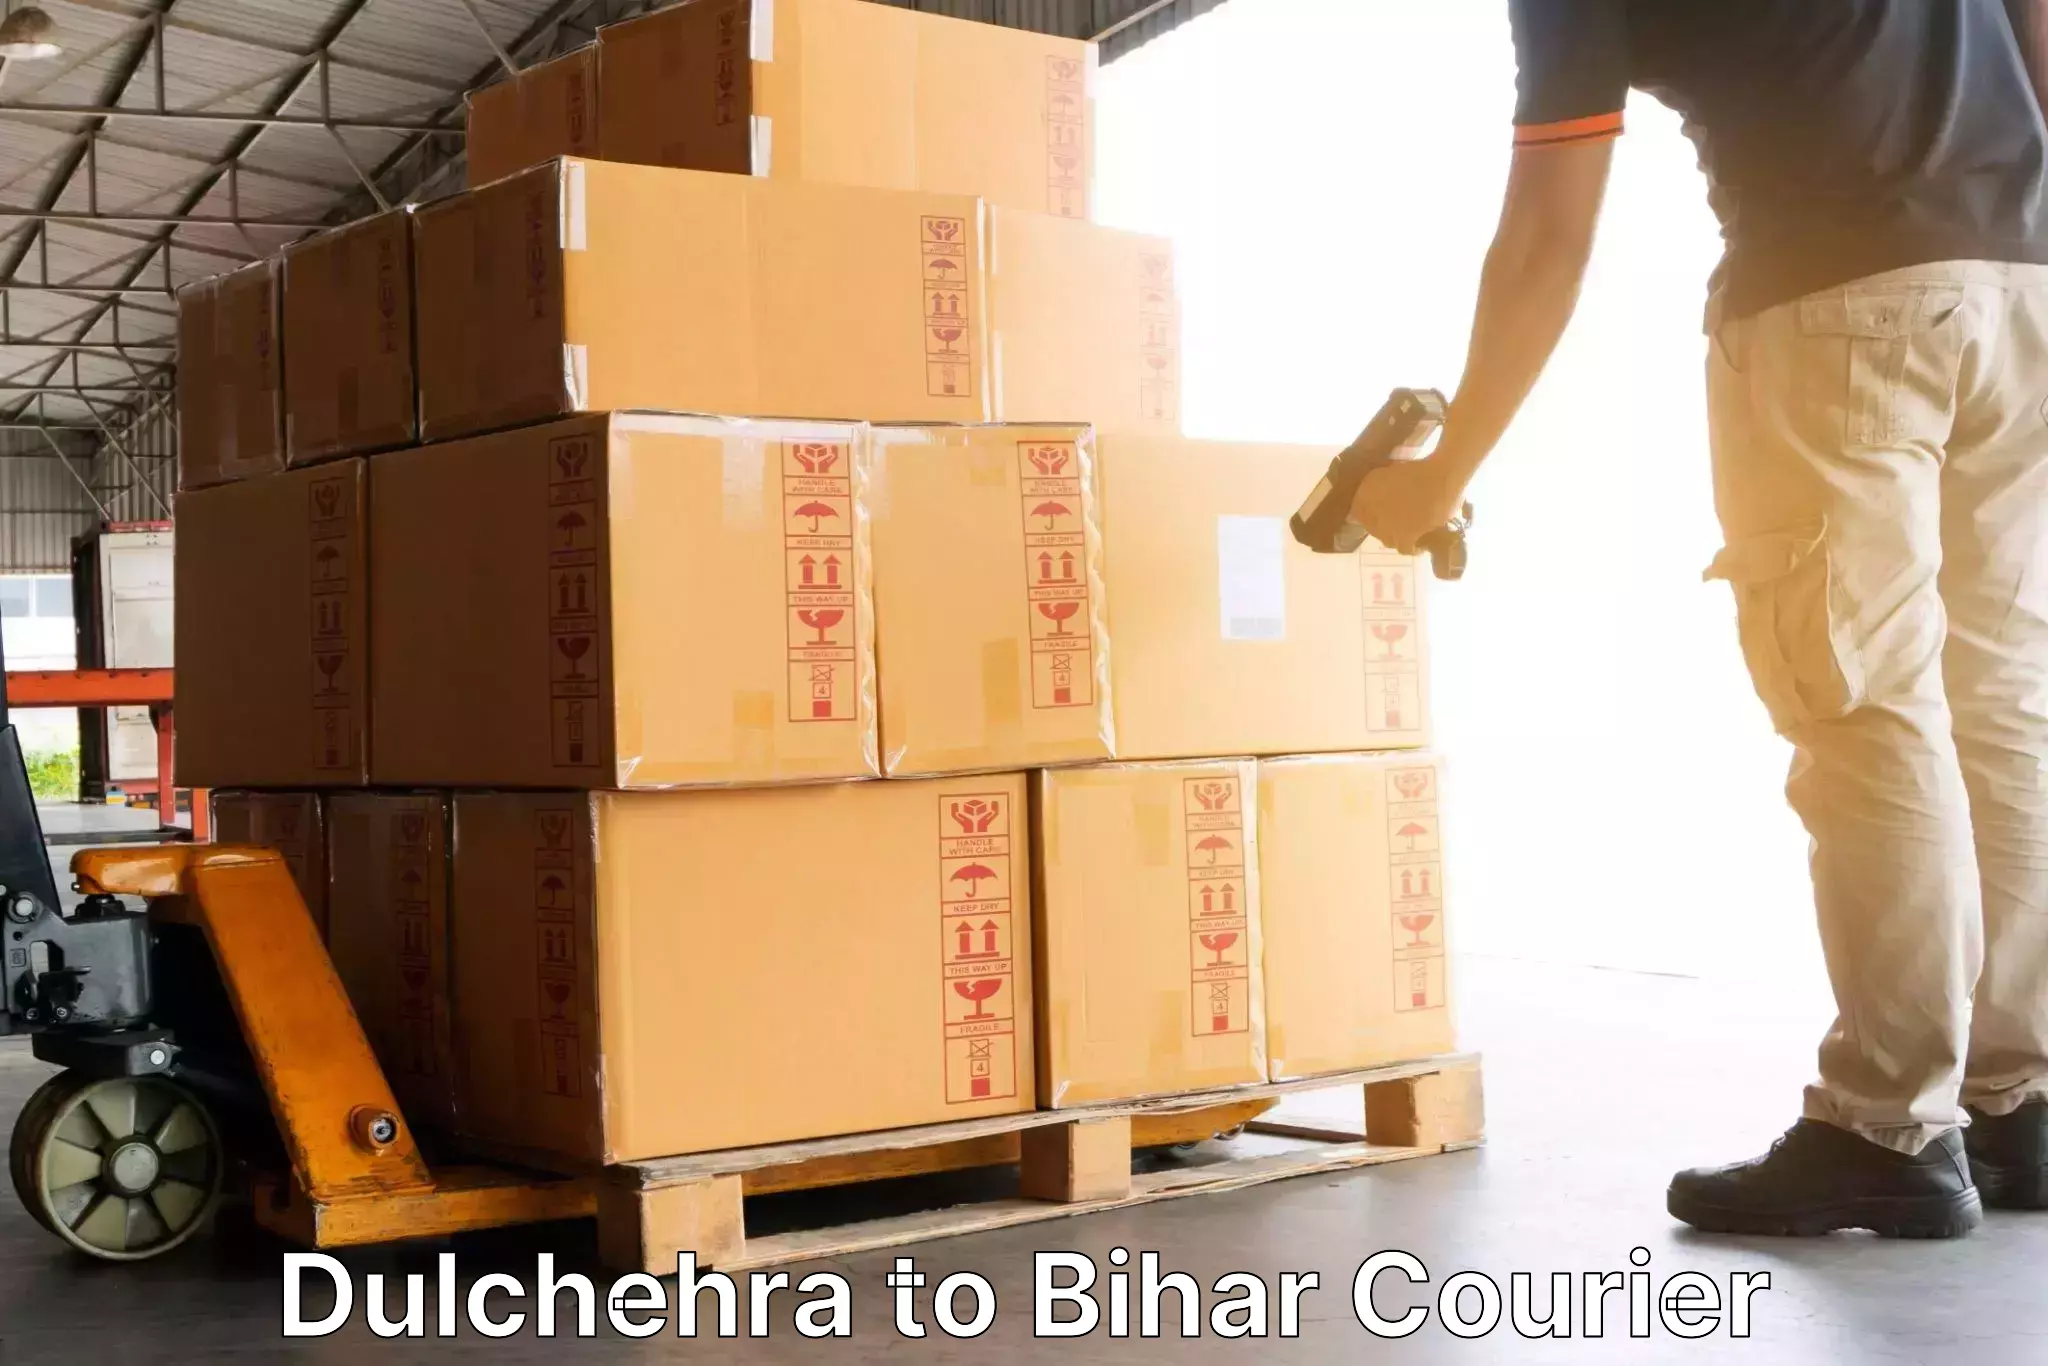 Local courier options Dulchehra to Kanker Nabinagar